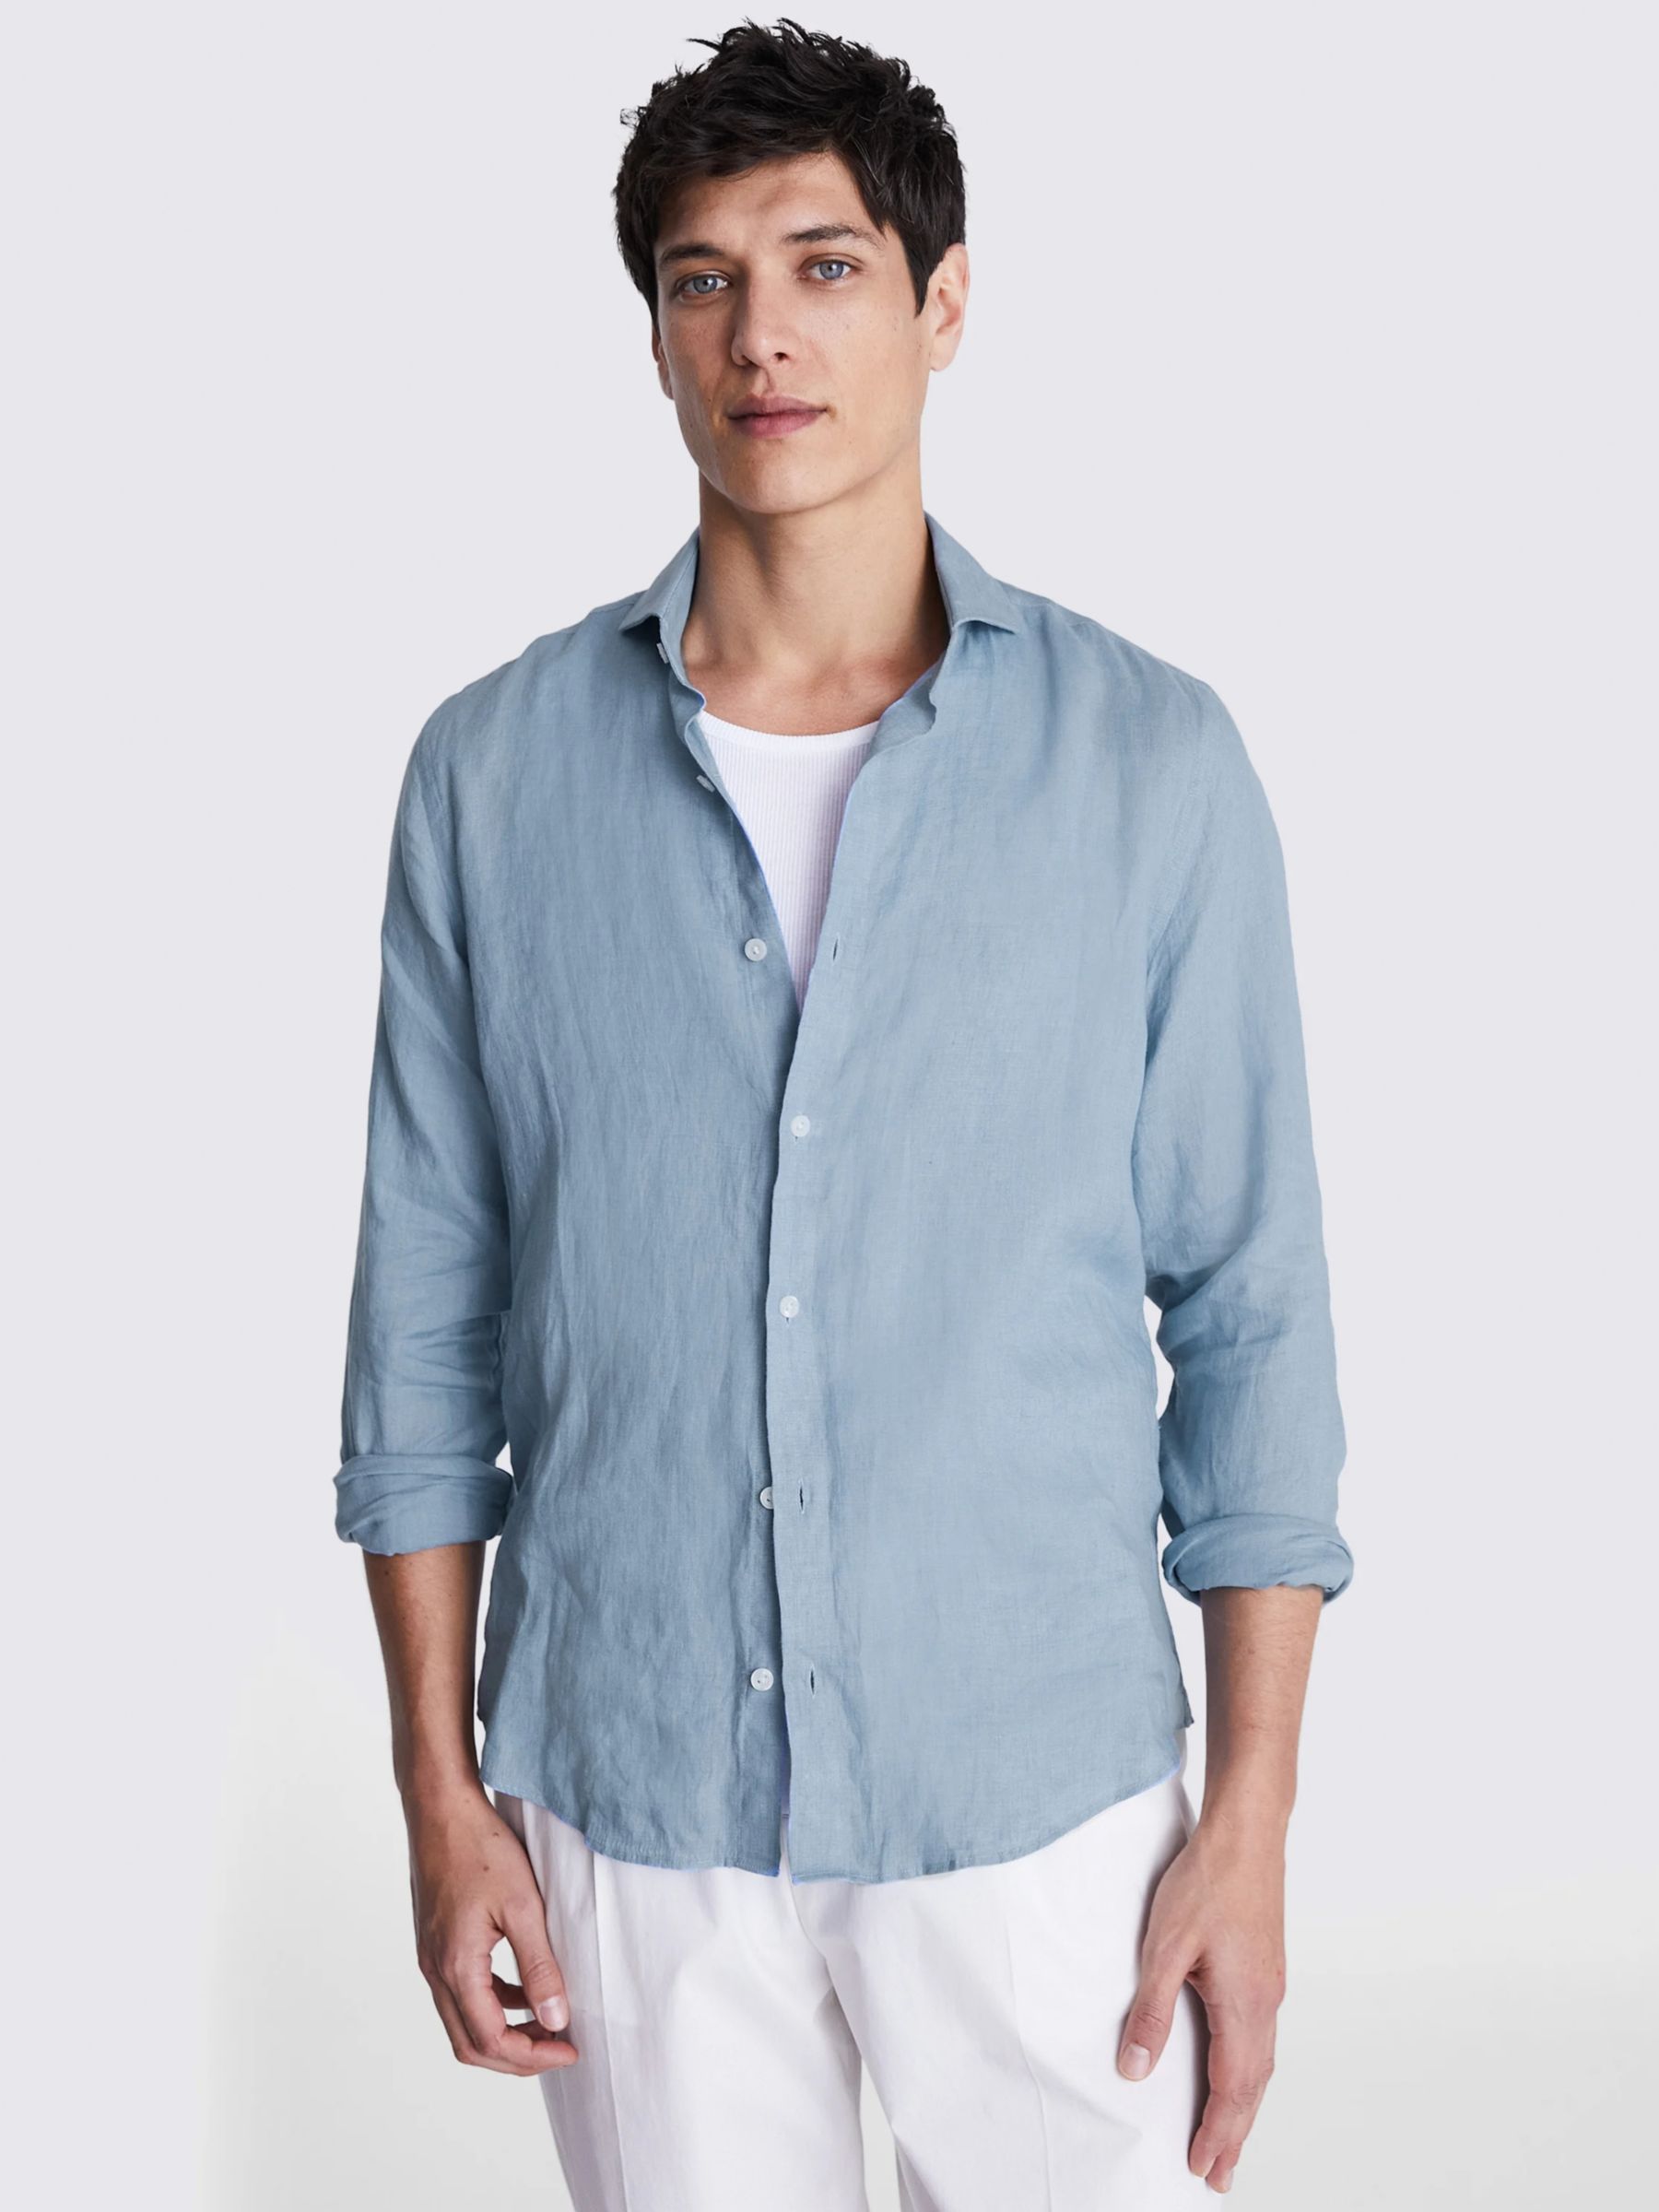 Moss Tailored Fit Linen Long Sleeve Shirt, Soft Blue, S